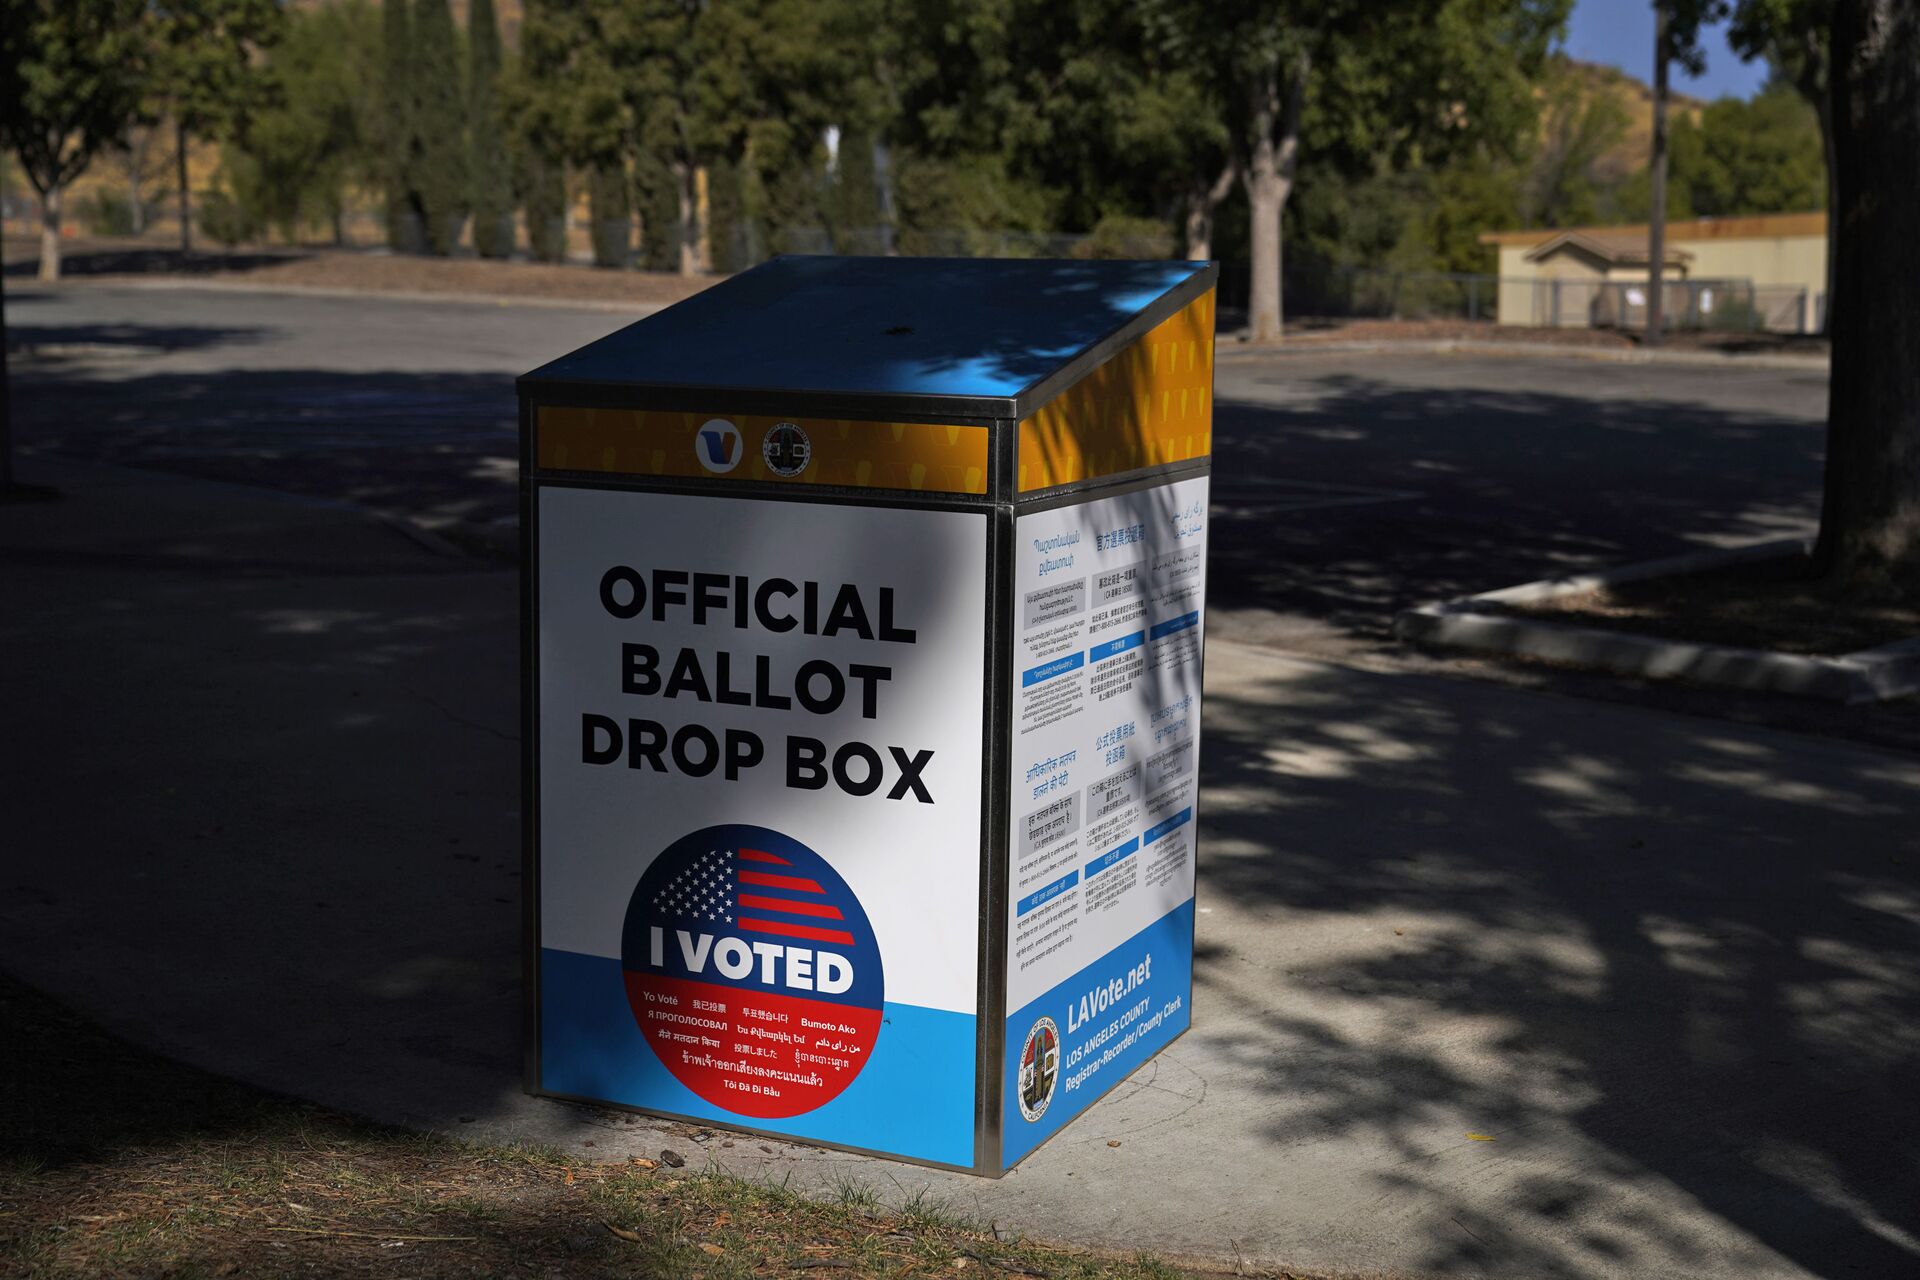 An official ballot drop box is seen Wednesday, Oct. 14, 2020, in Santa Clarita, Calif. - Sputnik International, 1920, 07.09.2021